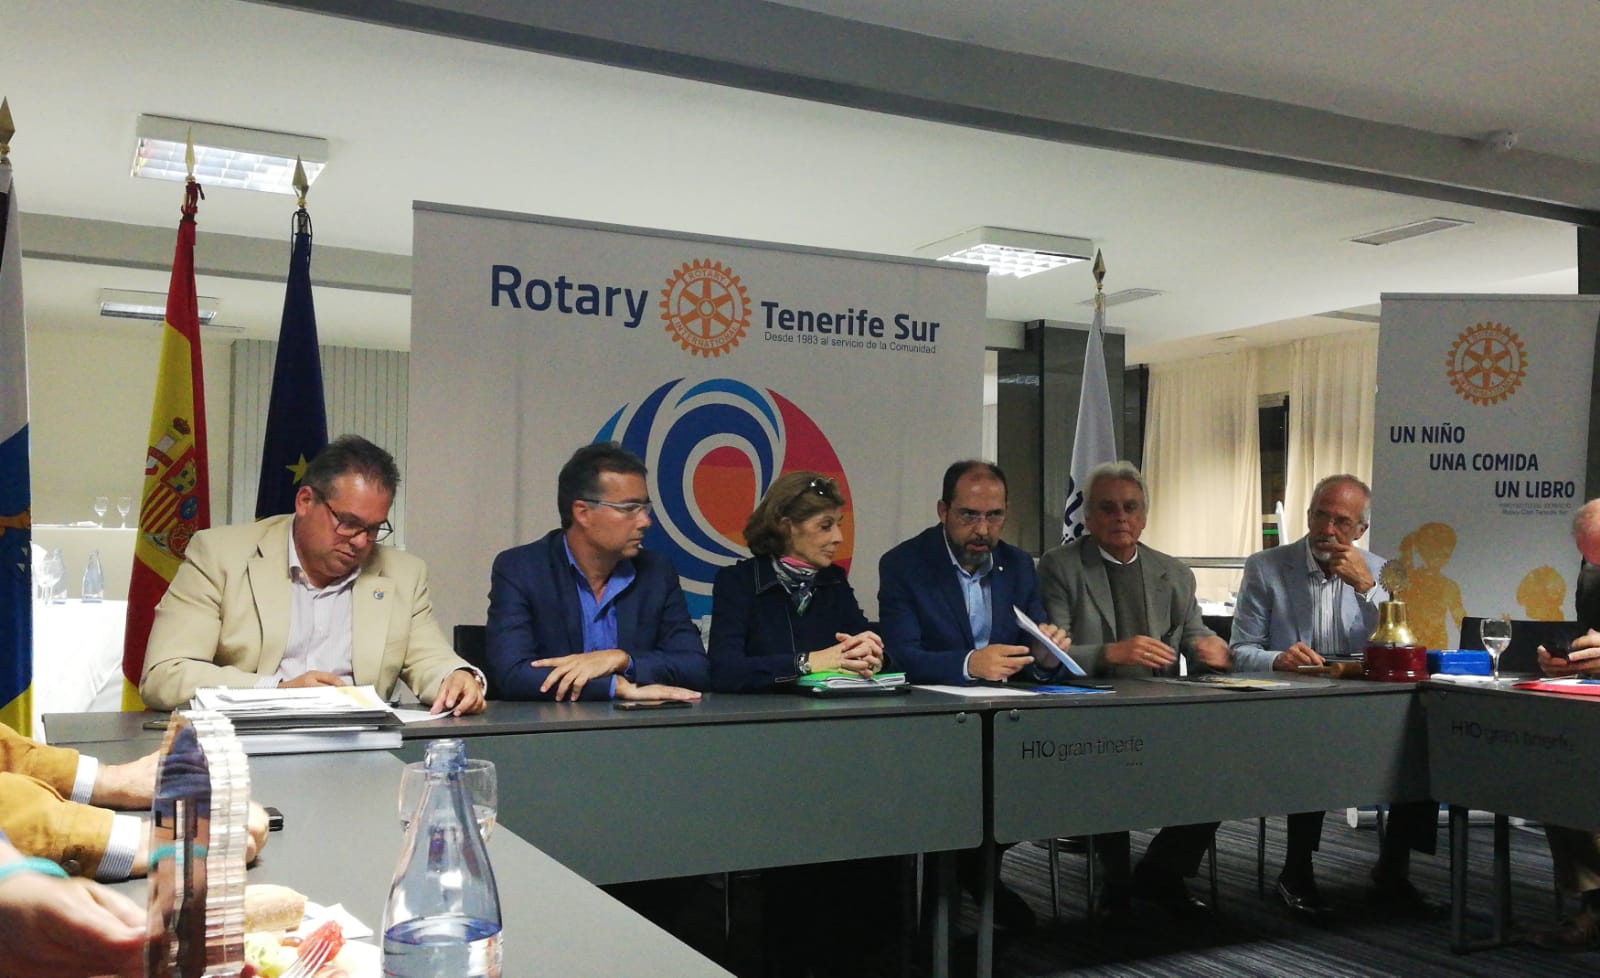 La asistente del gobernador, Virginia Carballude, visita al Rotary Club Tenerife Sur